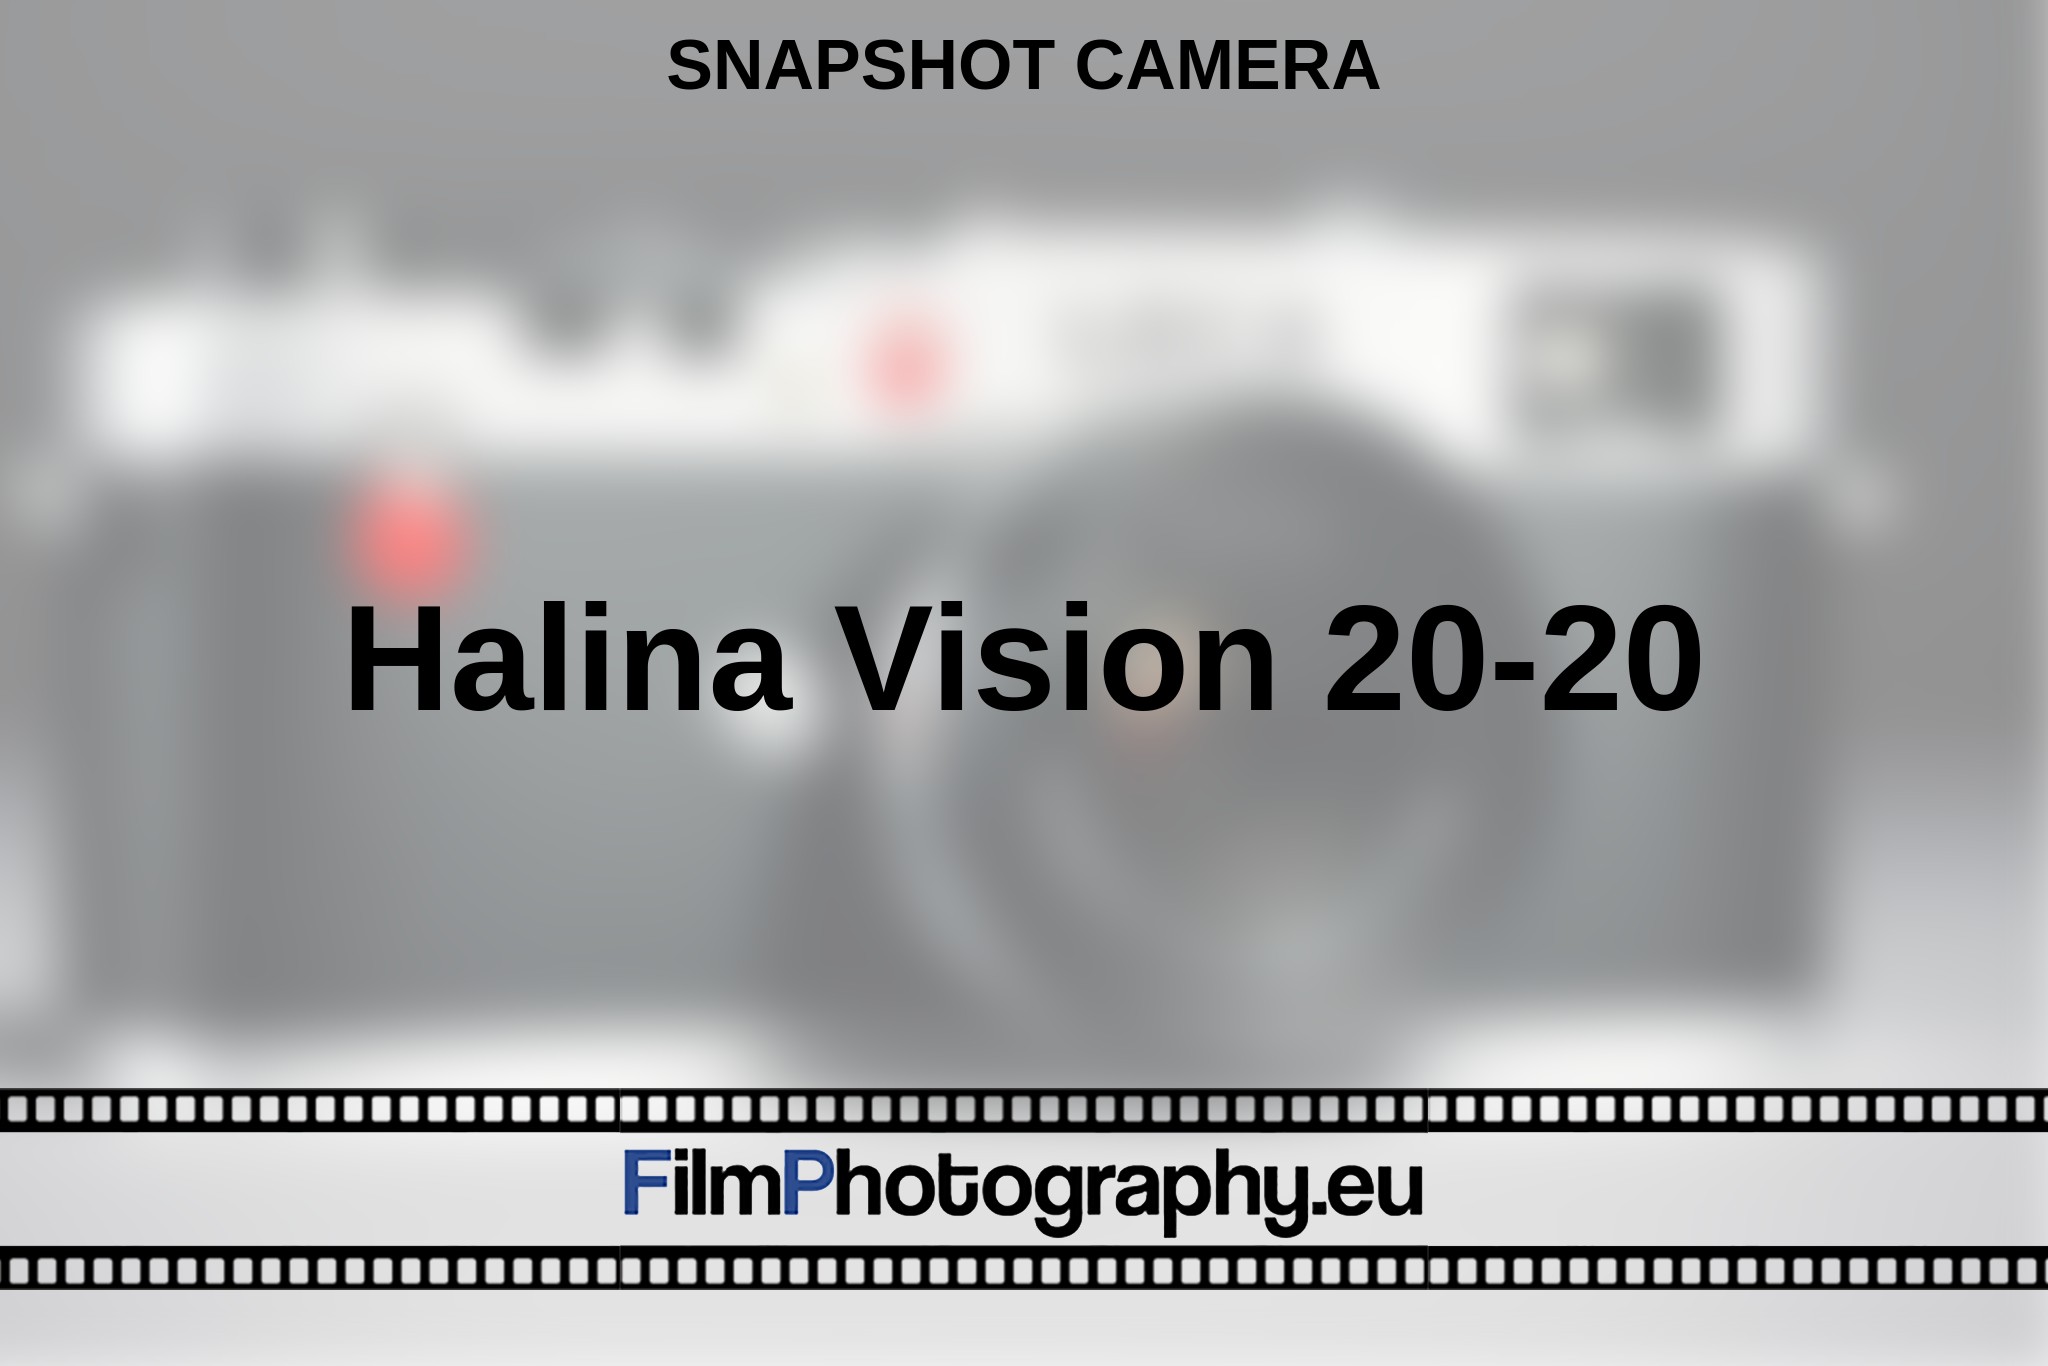 halina-vision-20-20-snapshot-camera-en-bnv.jpg